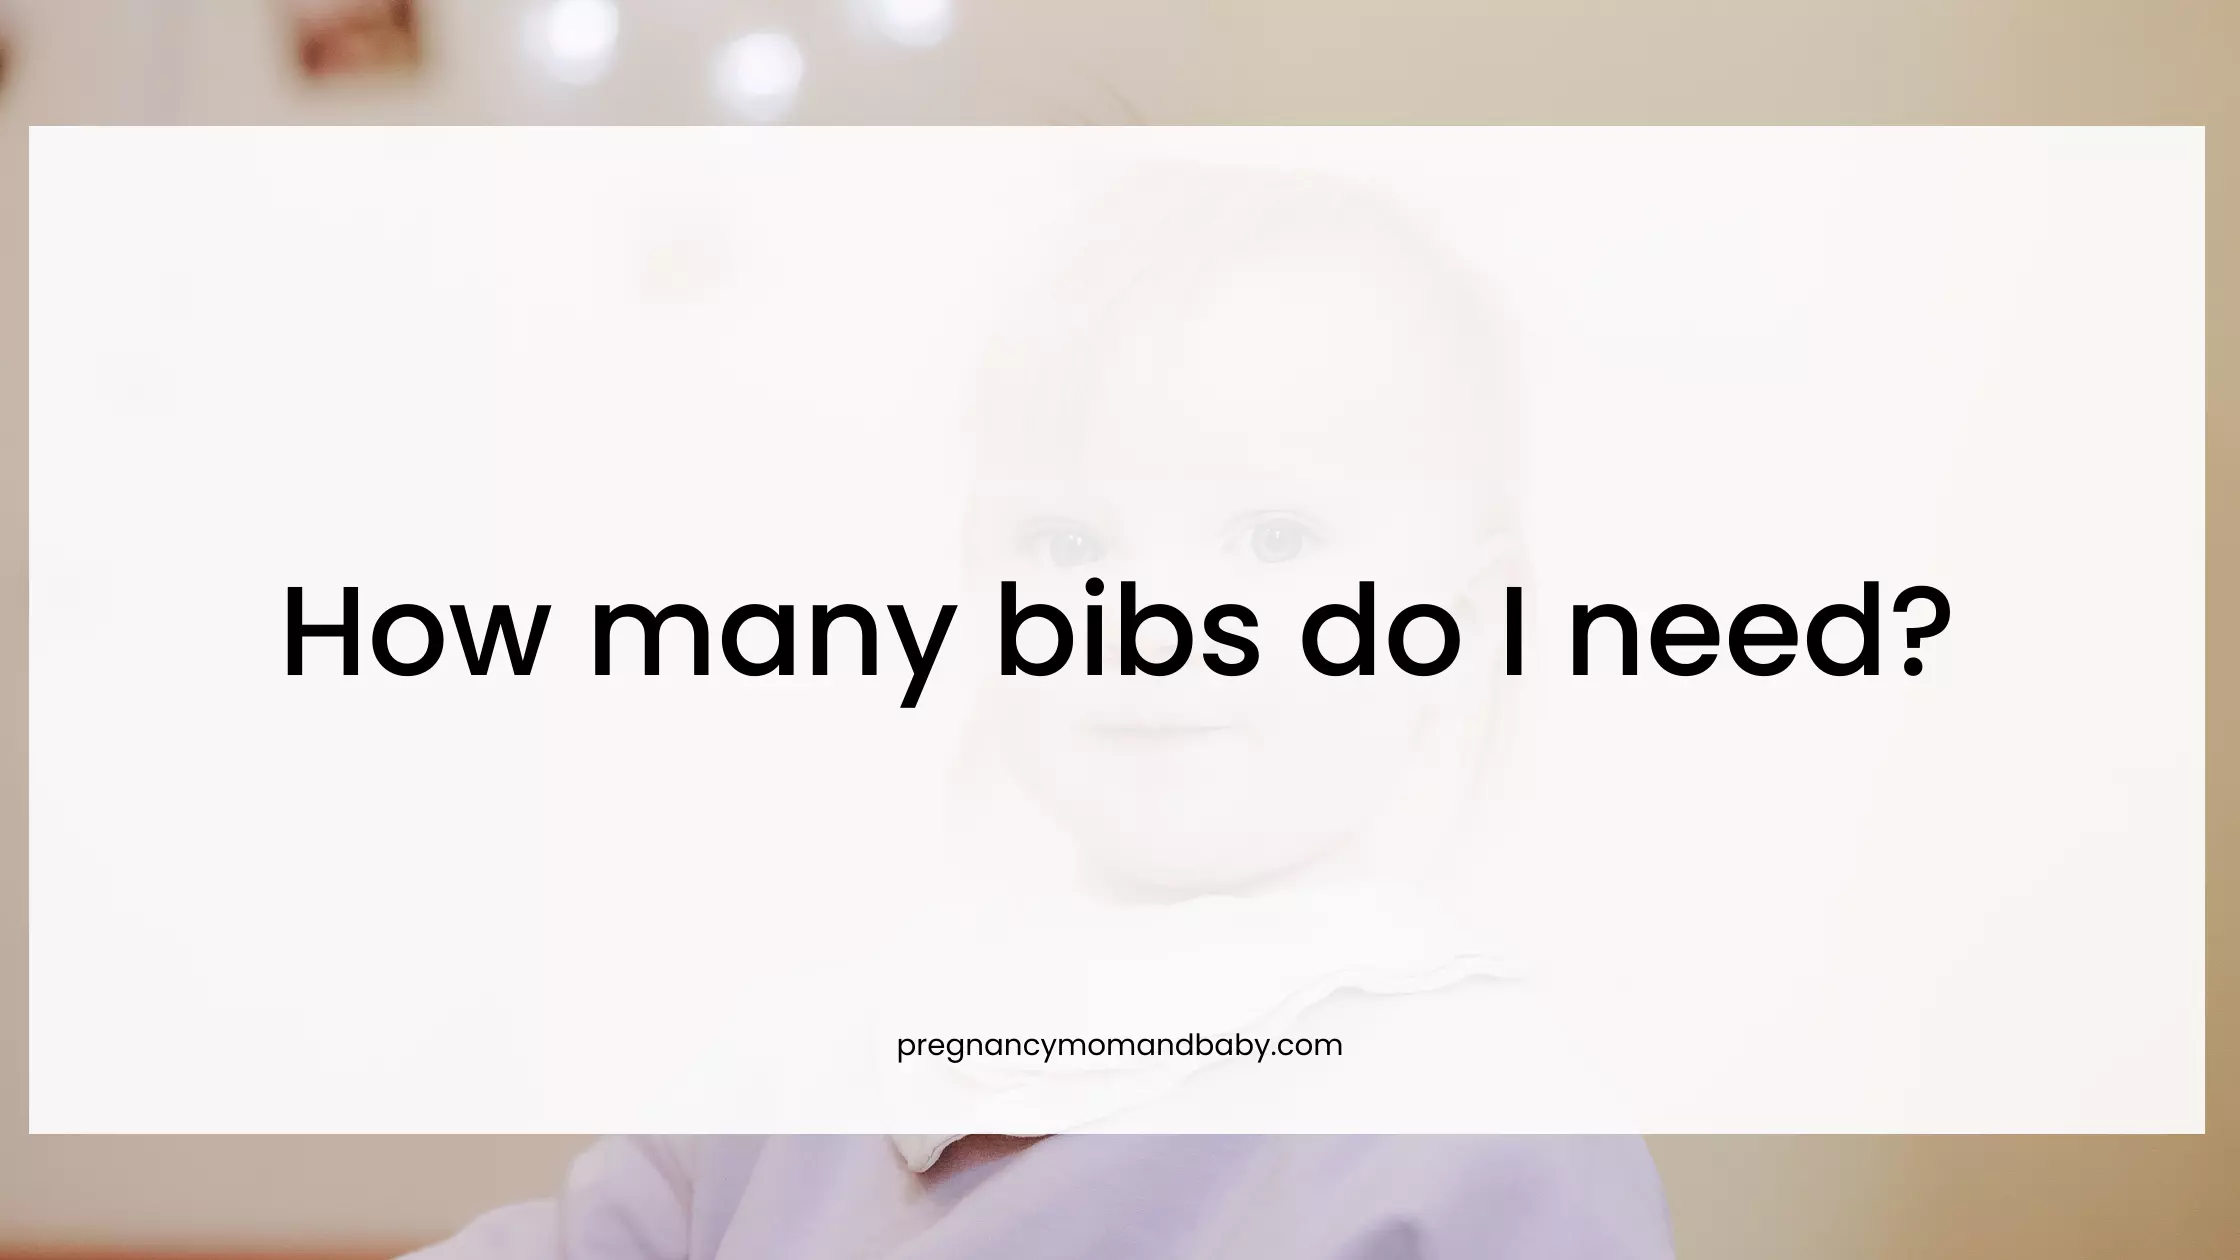 How many bibs do I need